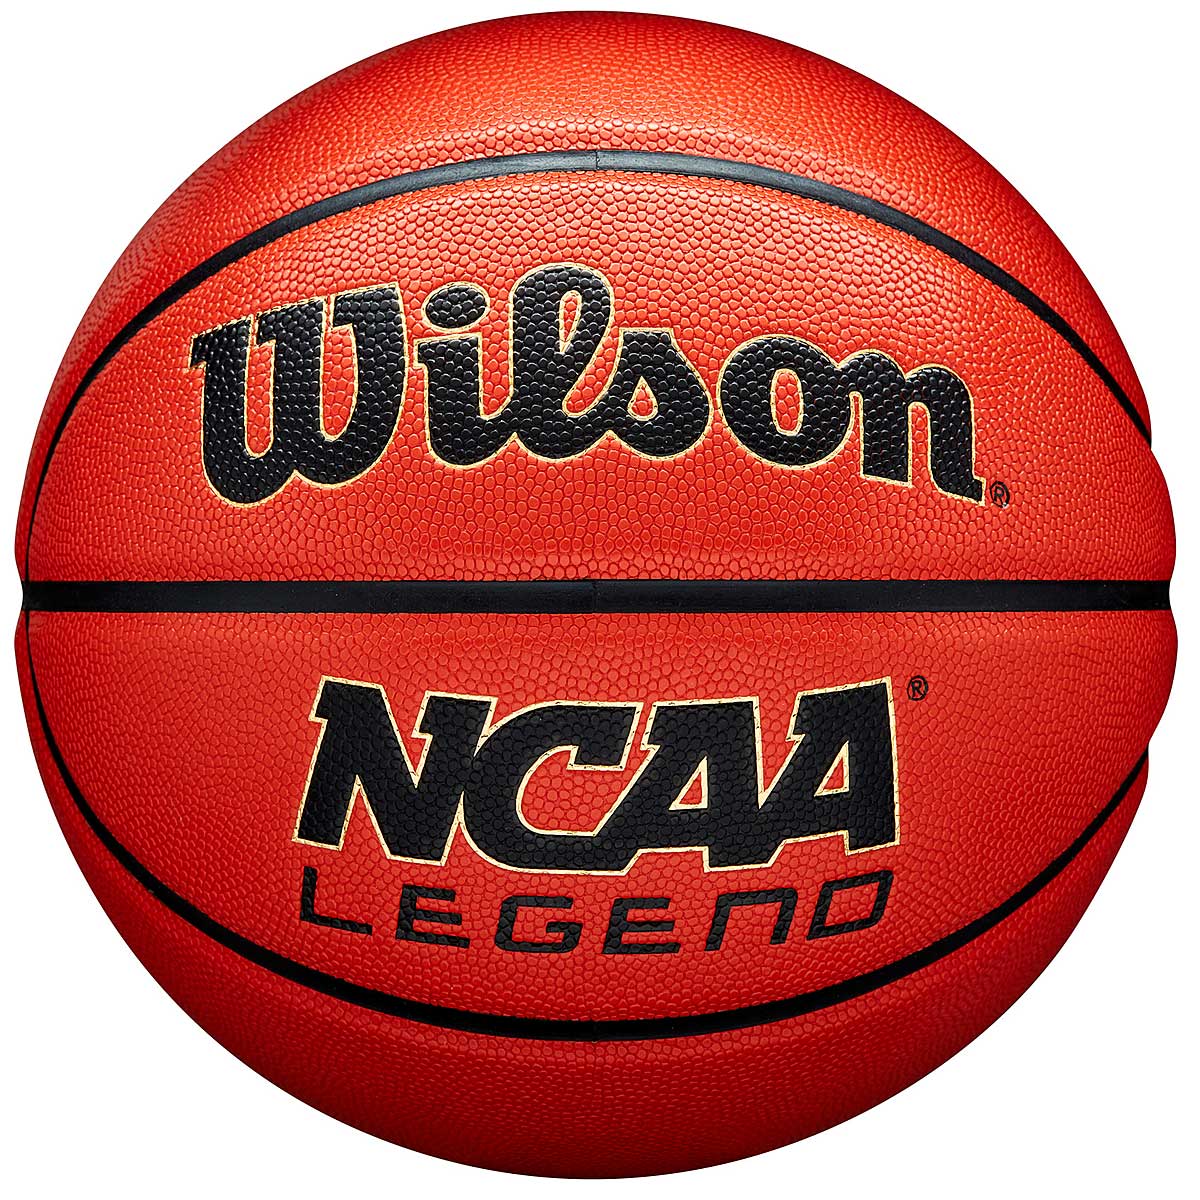 Image of Wilson Ncaa Legend Basketball, Orange